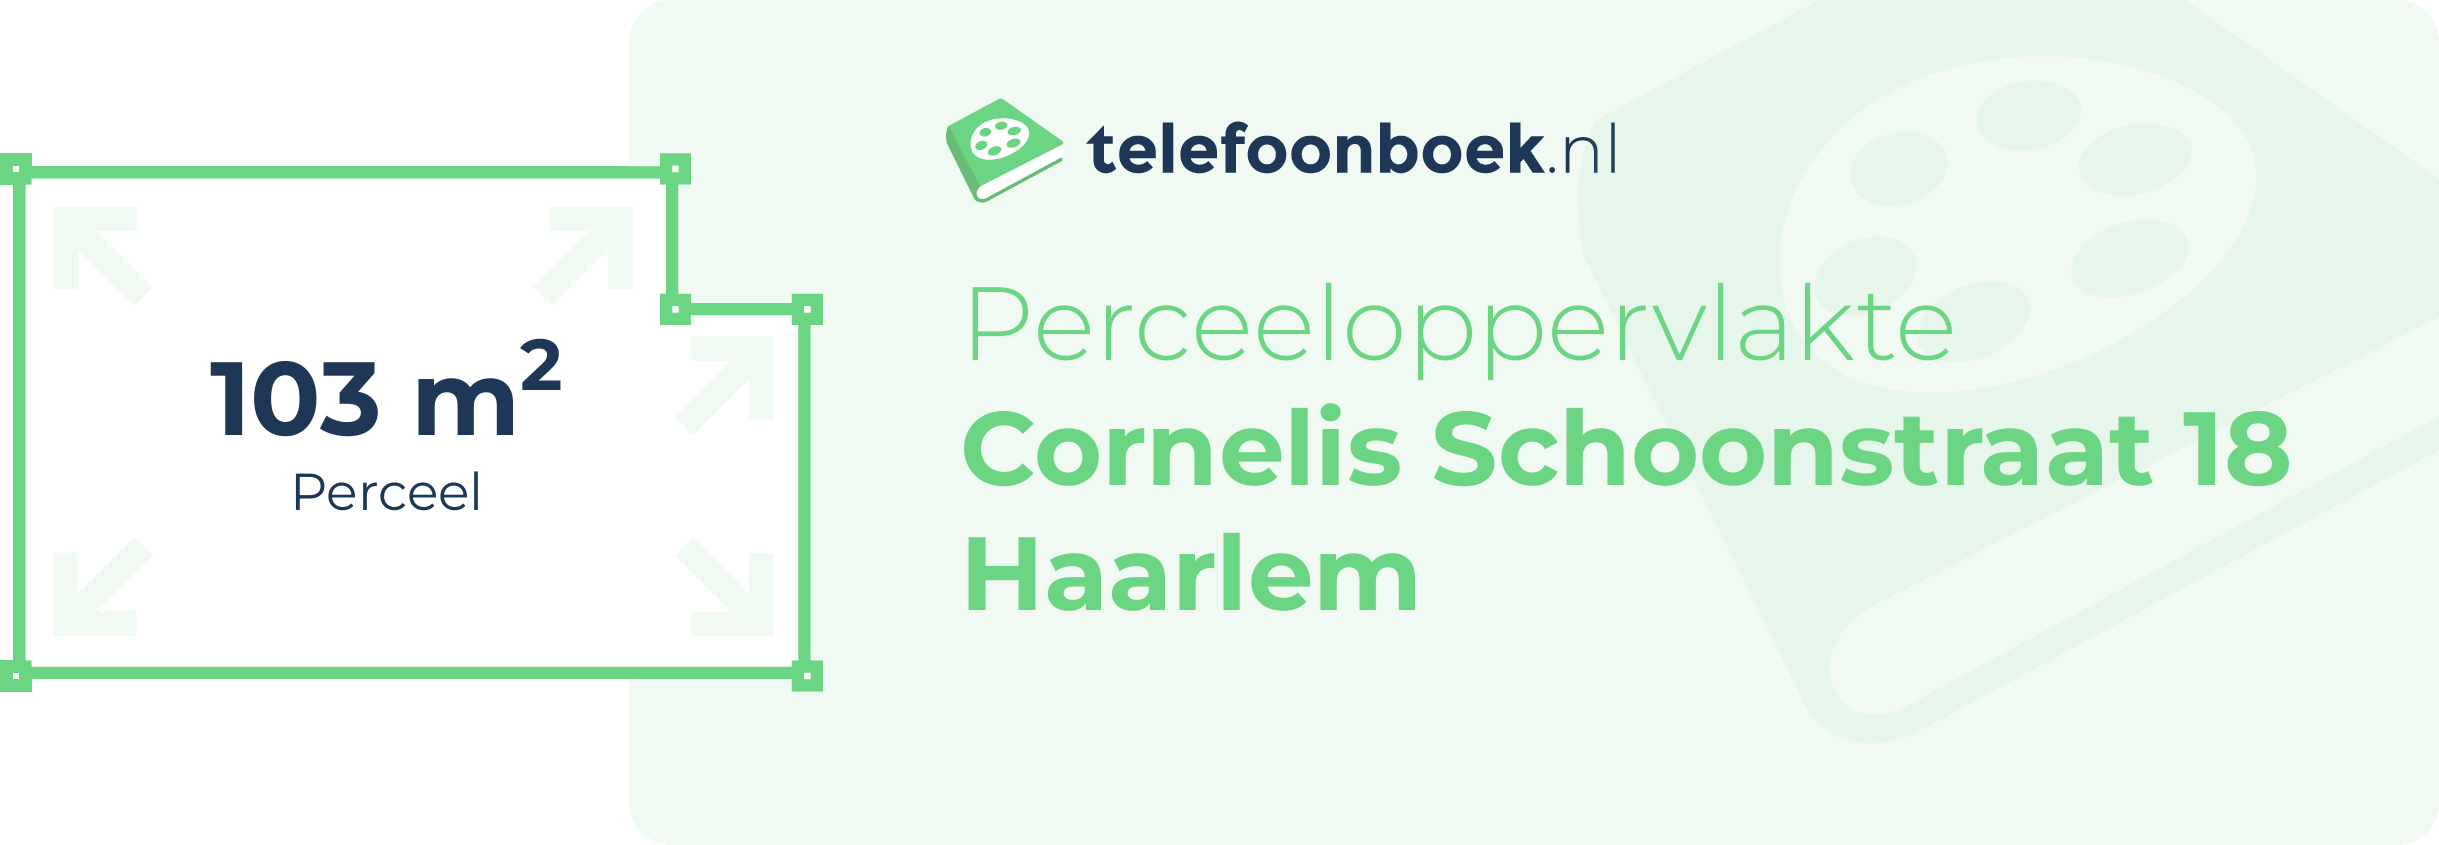 Perceeloppervlakte Cornelis Schoonstraat 18 Haarlem